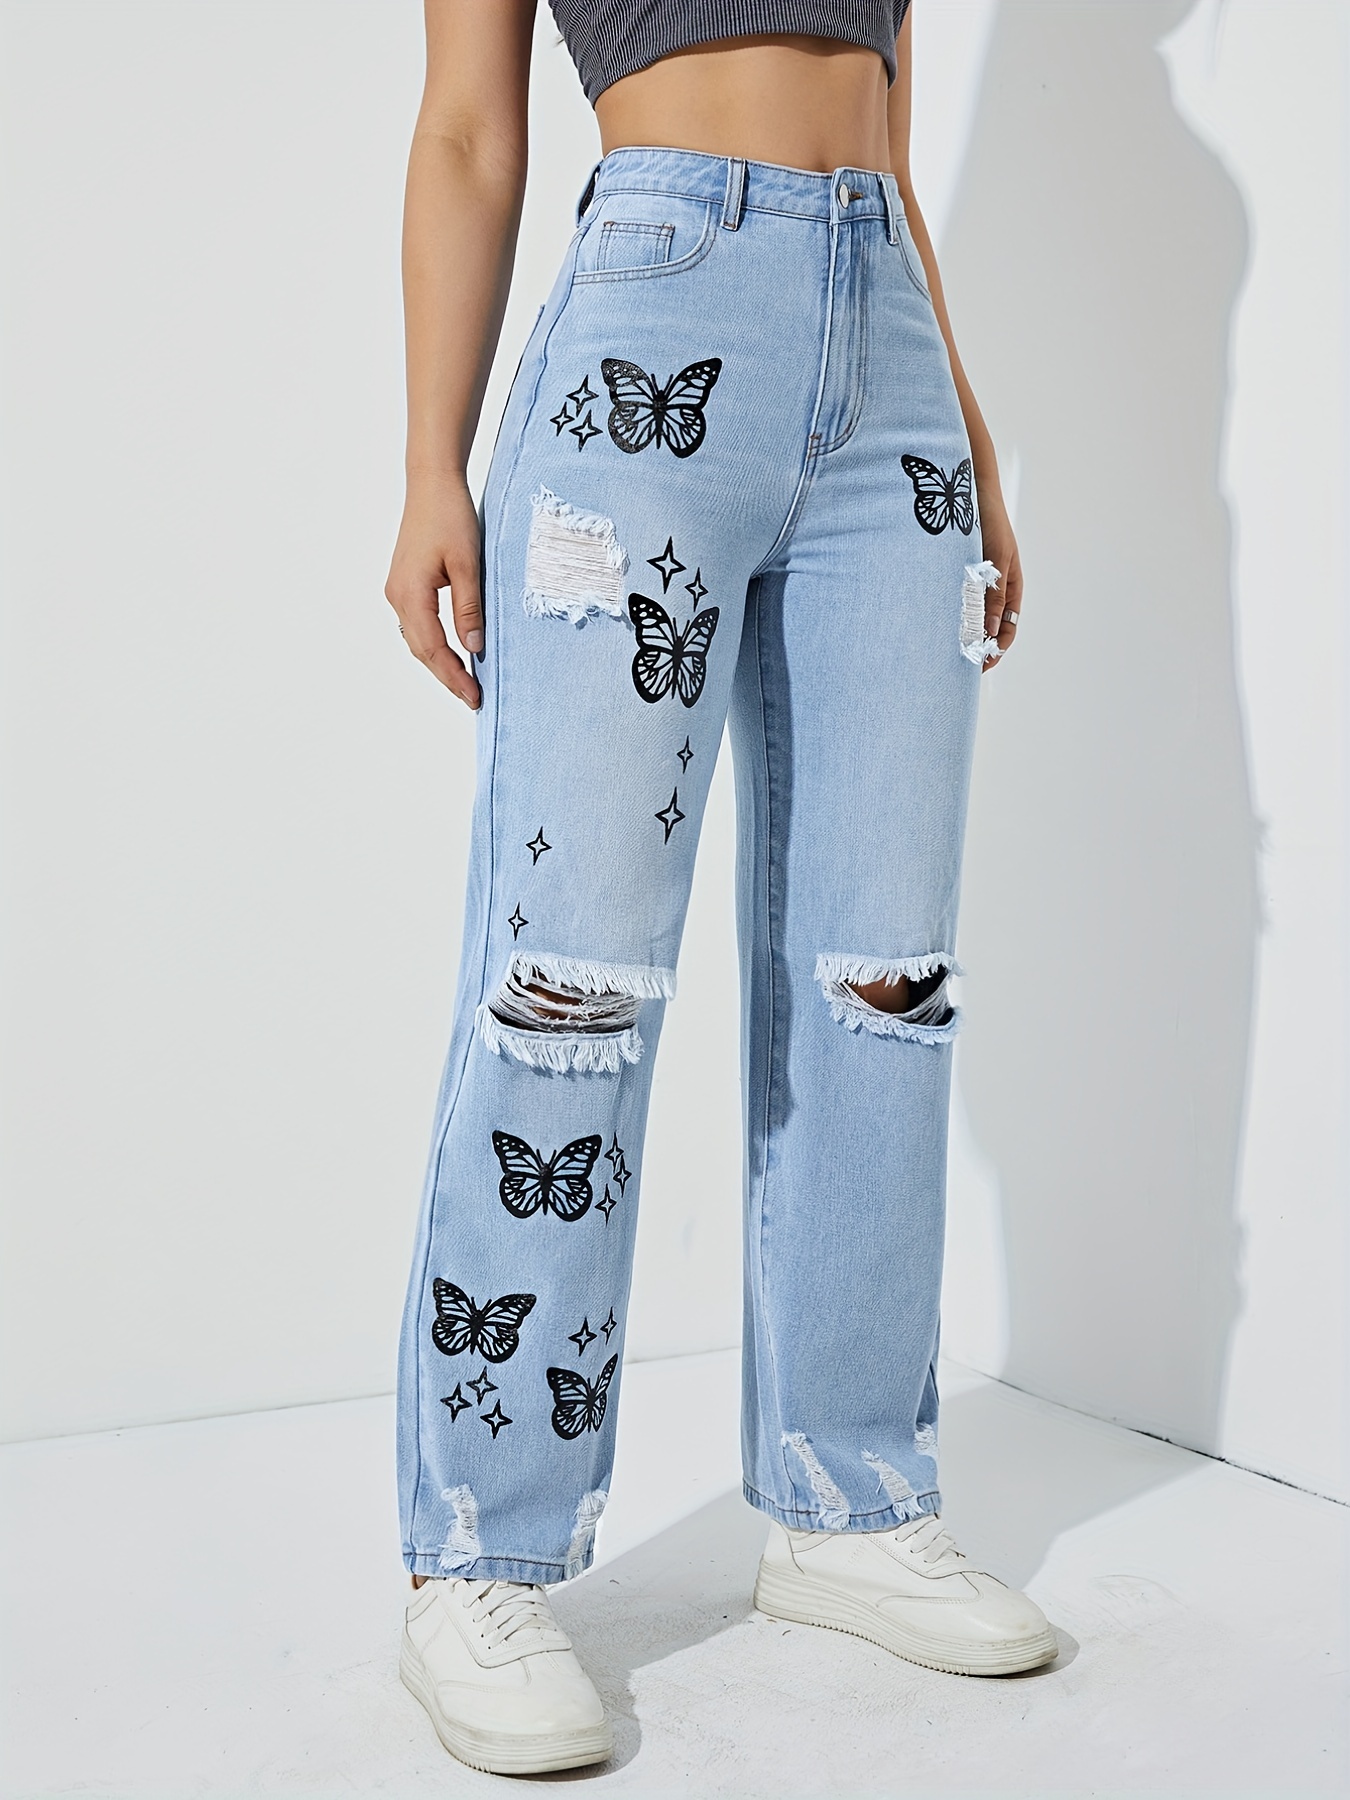  AIEBO Jeans de mujer con estampado de mariposas jeans rasgados  para mujer (color gris oscuro, talla: S) : Ropa, Zapatos y Joyería